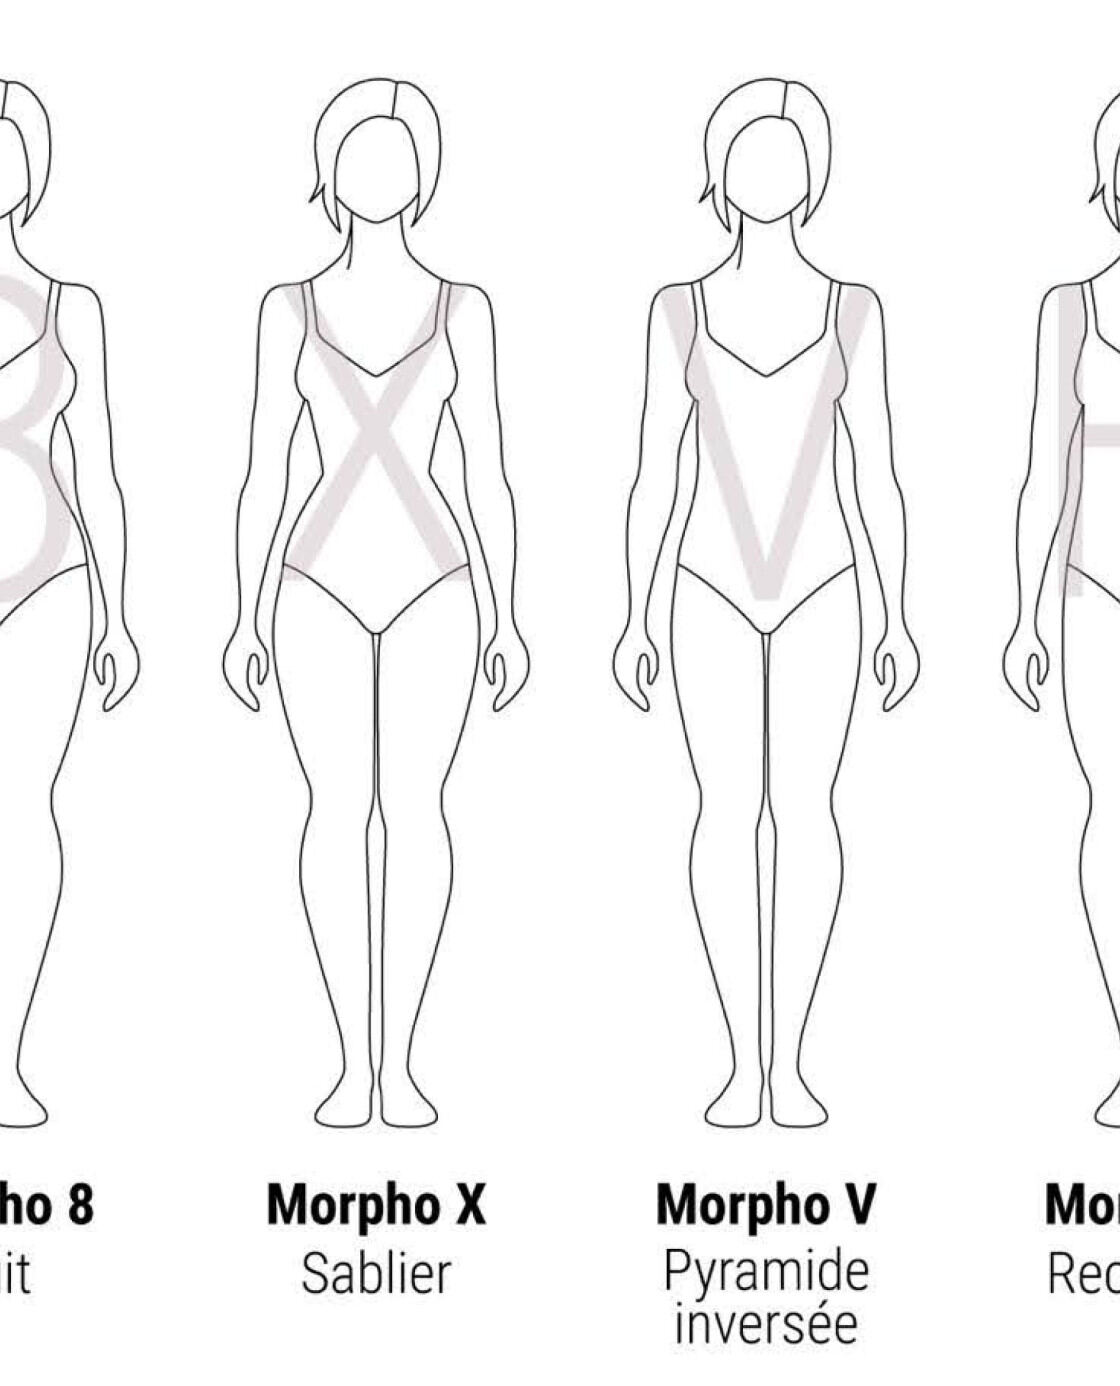 Les morphologies de femme